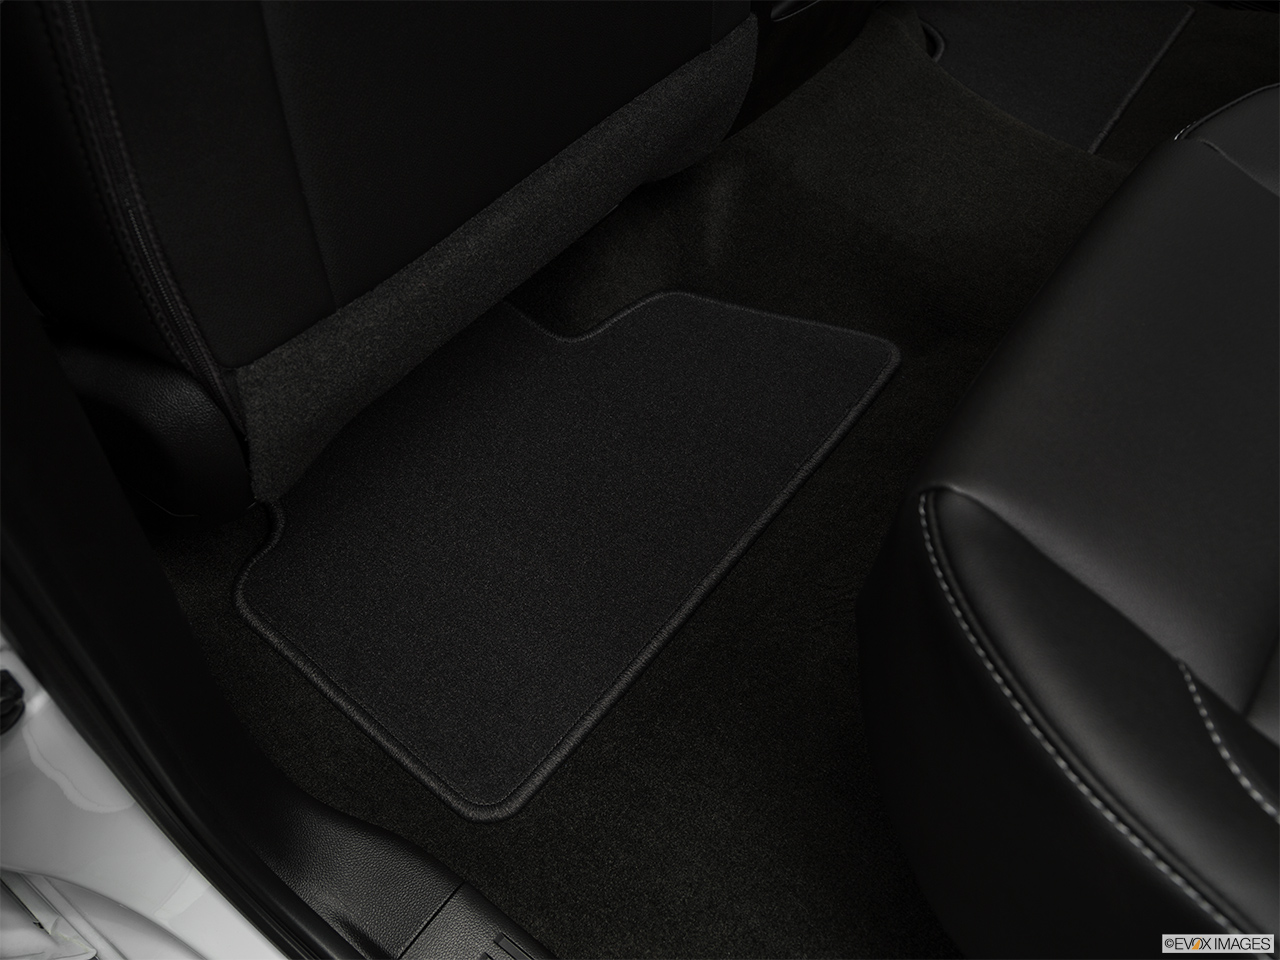 2019 GMC Sierra 2500HD SLT Rear driver's side floor mat. Mid-seat level from outside looking in. 